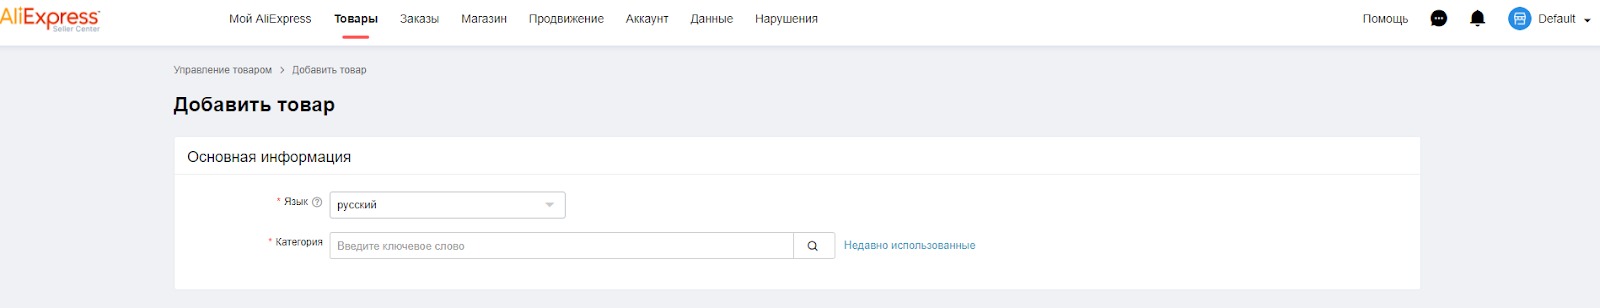 Как Заказать на АлиЭкспресс в Беларусь — Пошаговая инструкция для новичков сайта